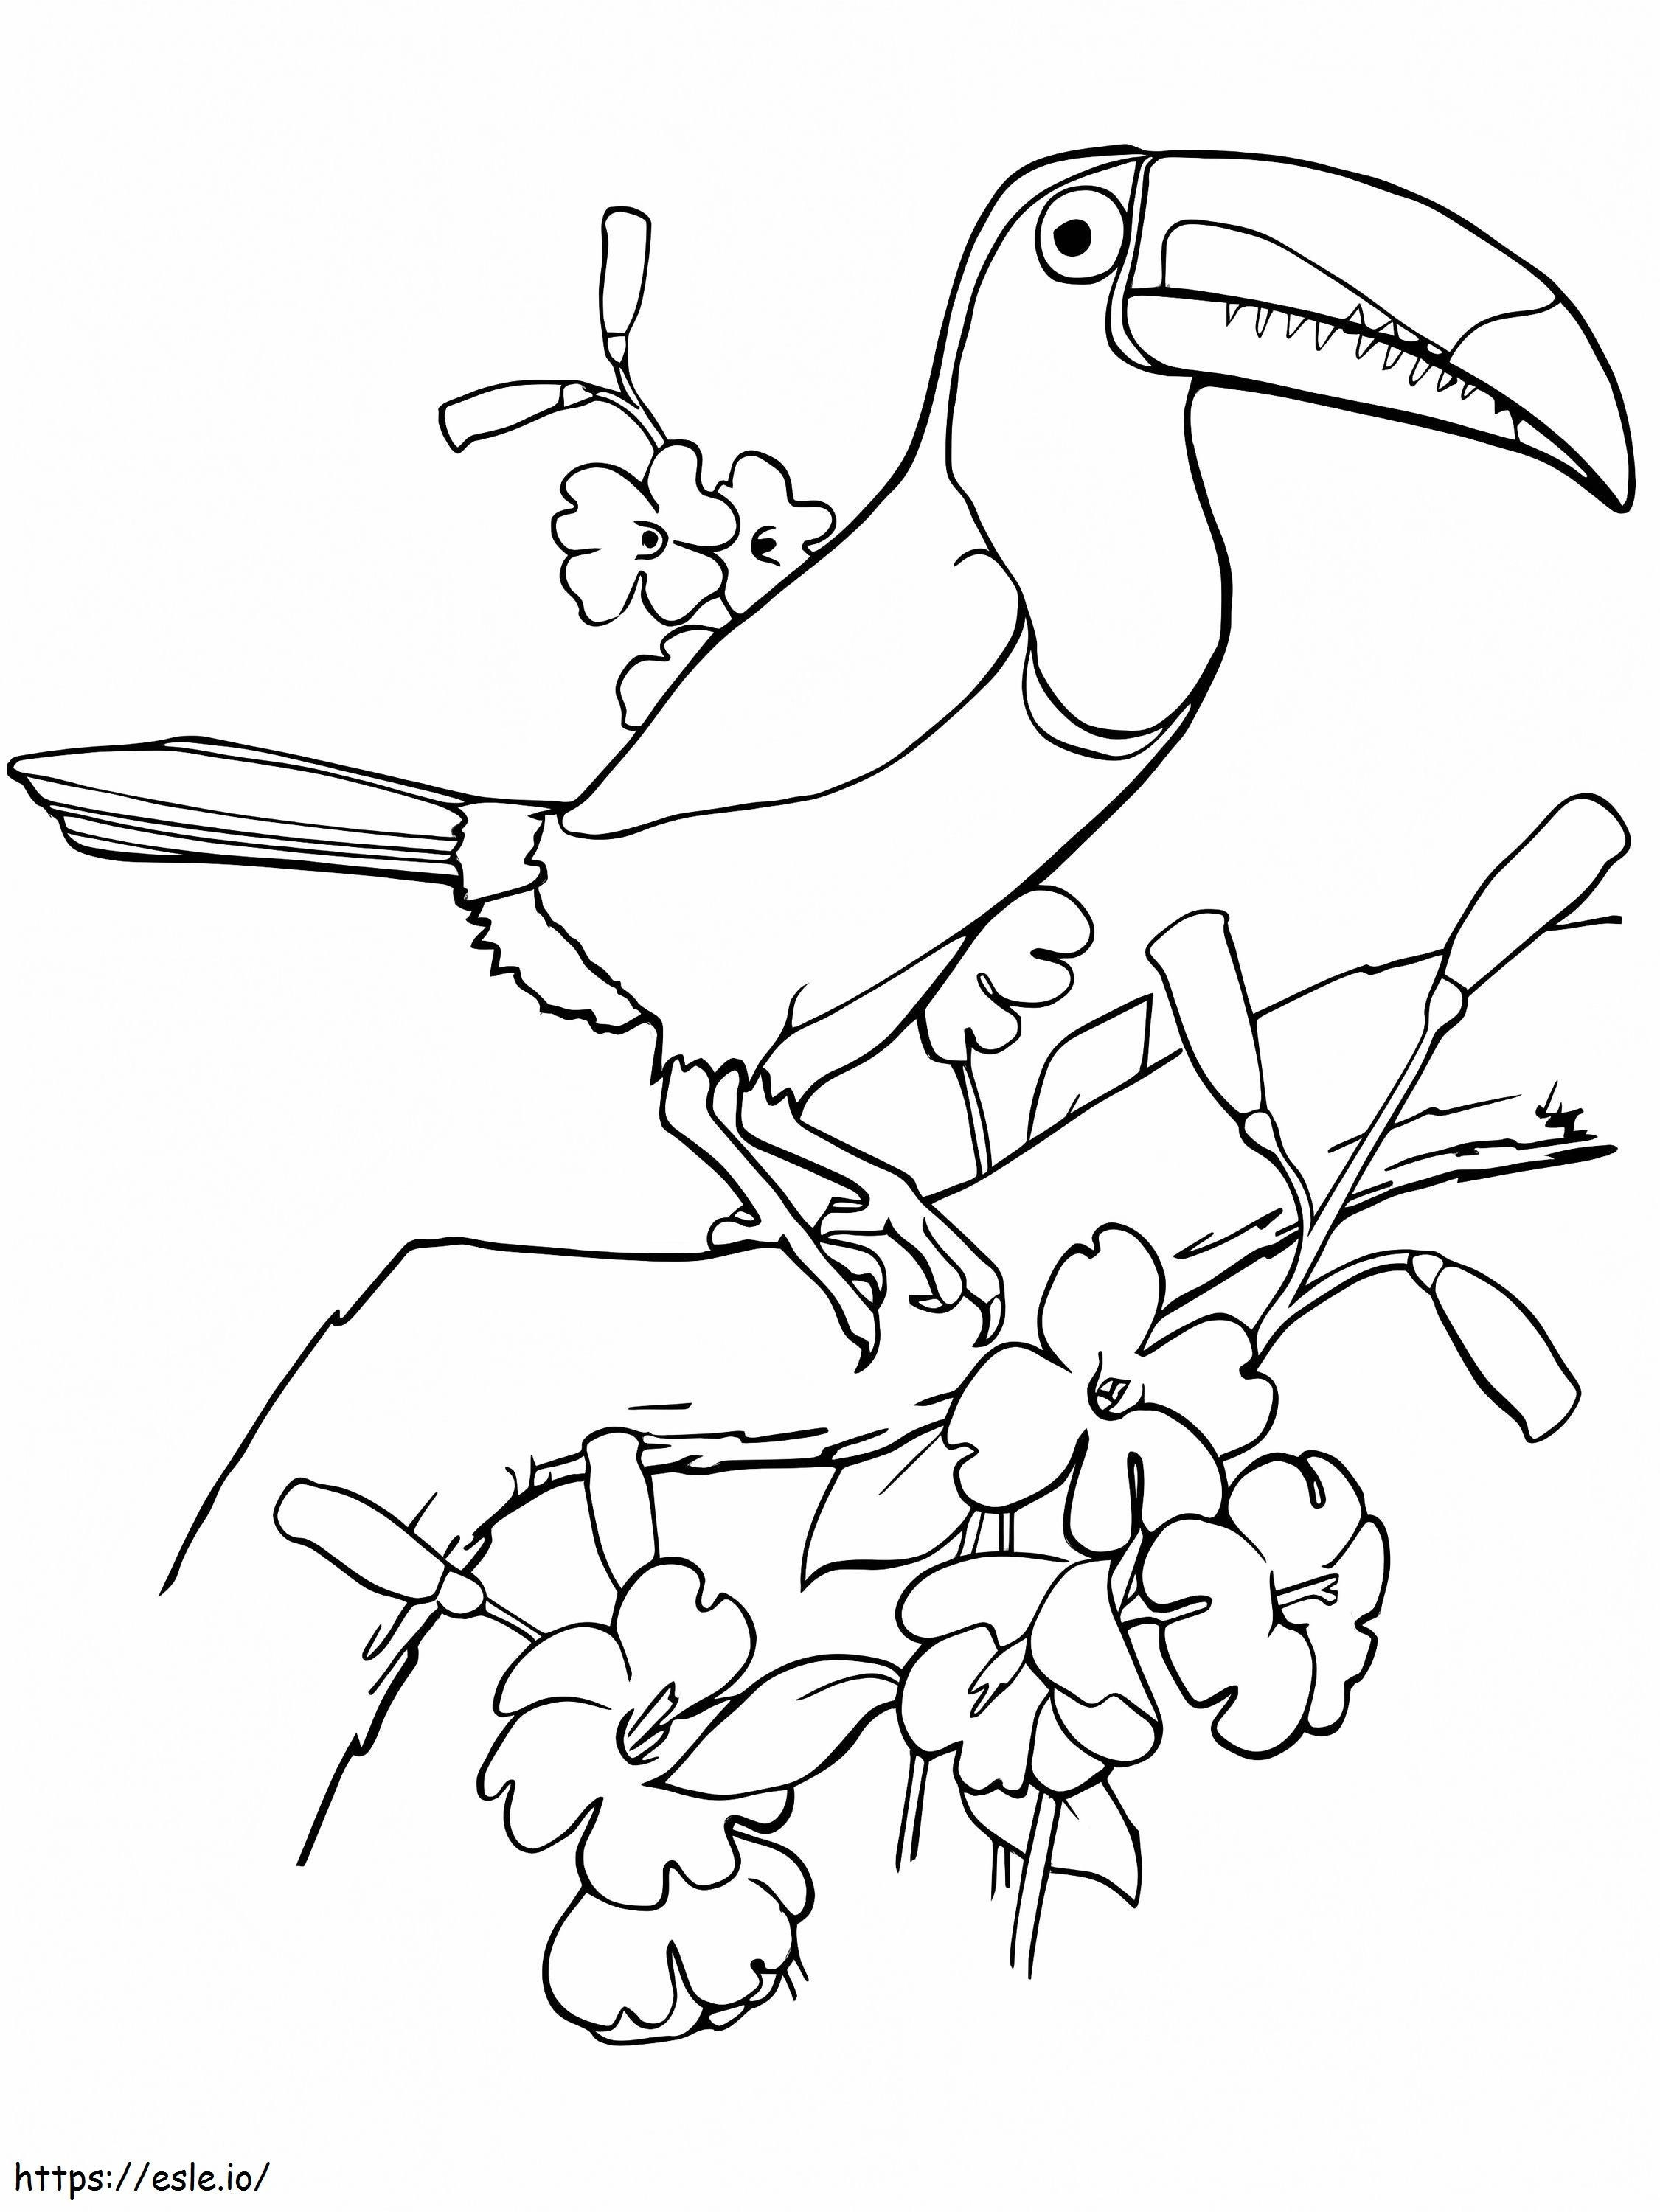 Albero rampicante dell'uccello del tucano da colorare